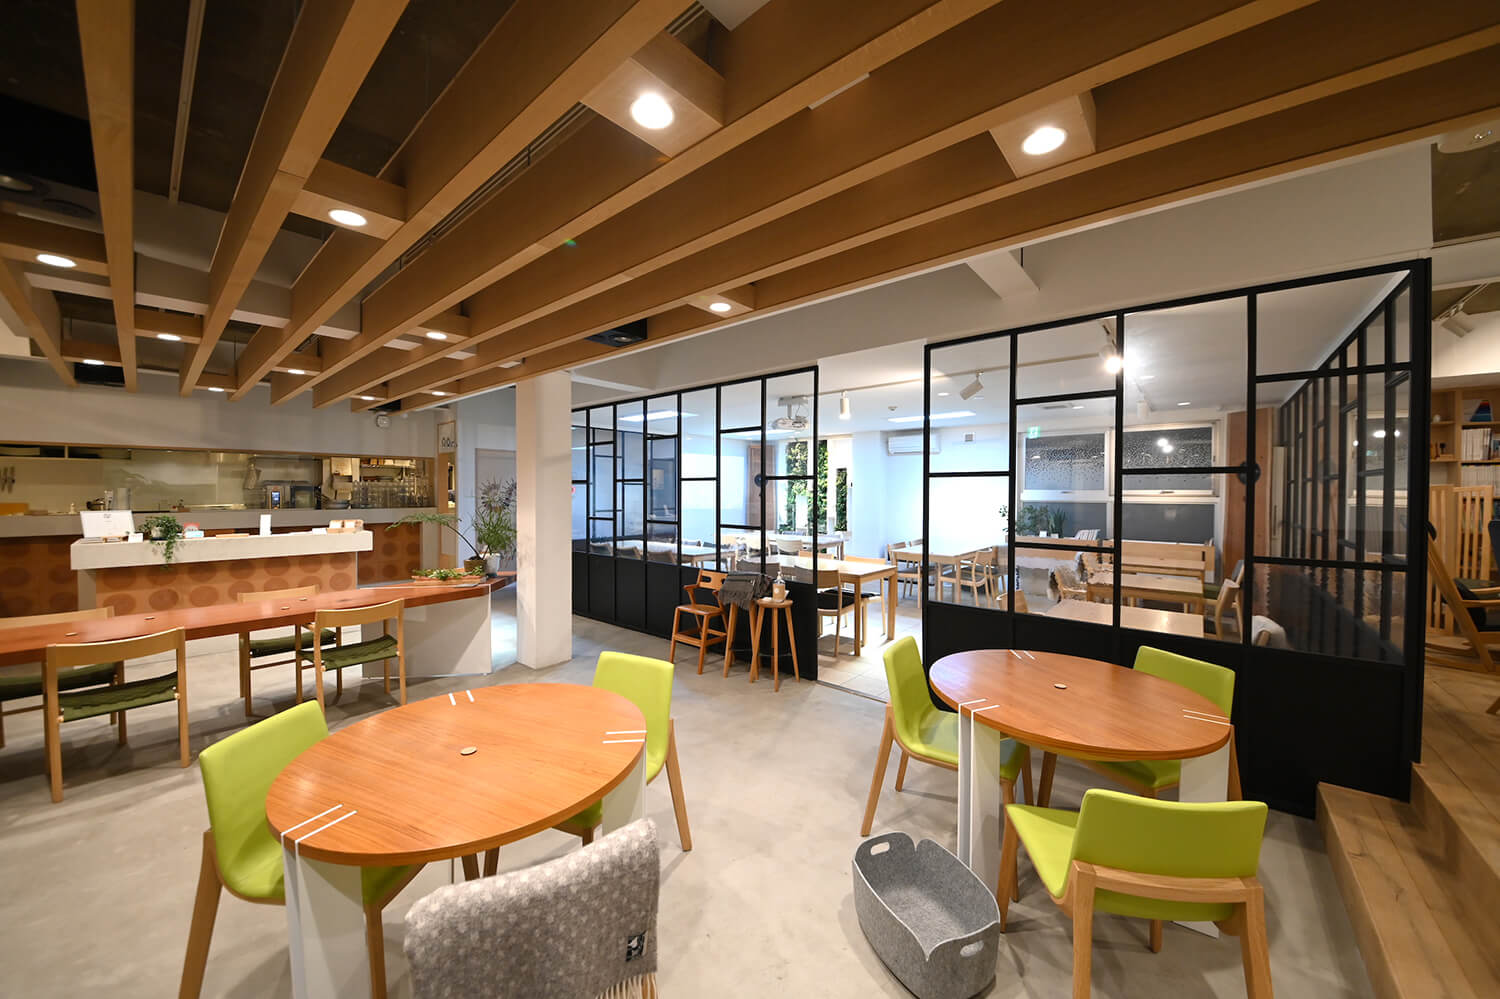 隣接する旭川デザインセンター製作のオリジナル家具が並ぶゆとりある空間の店内